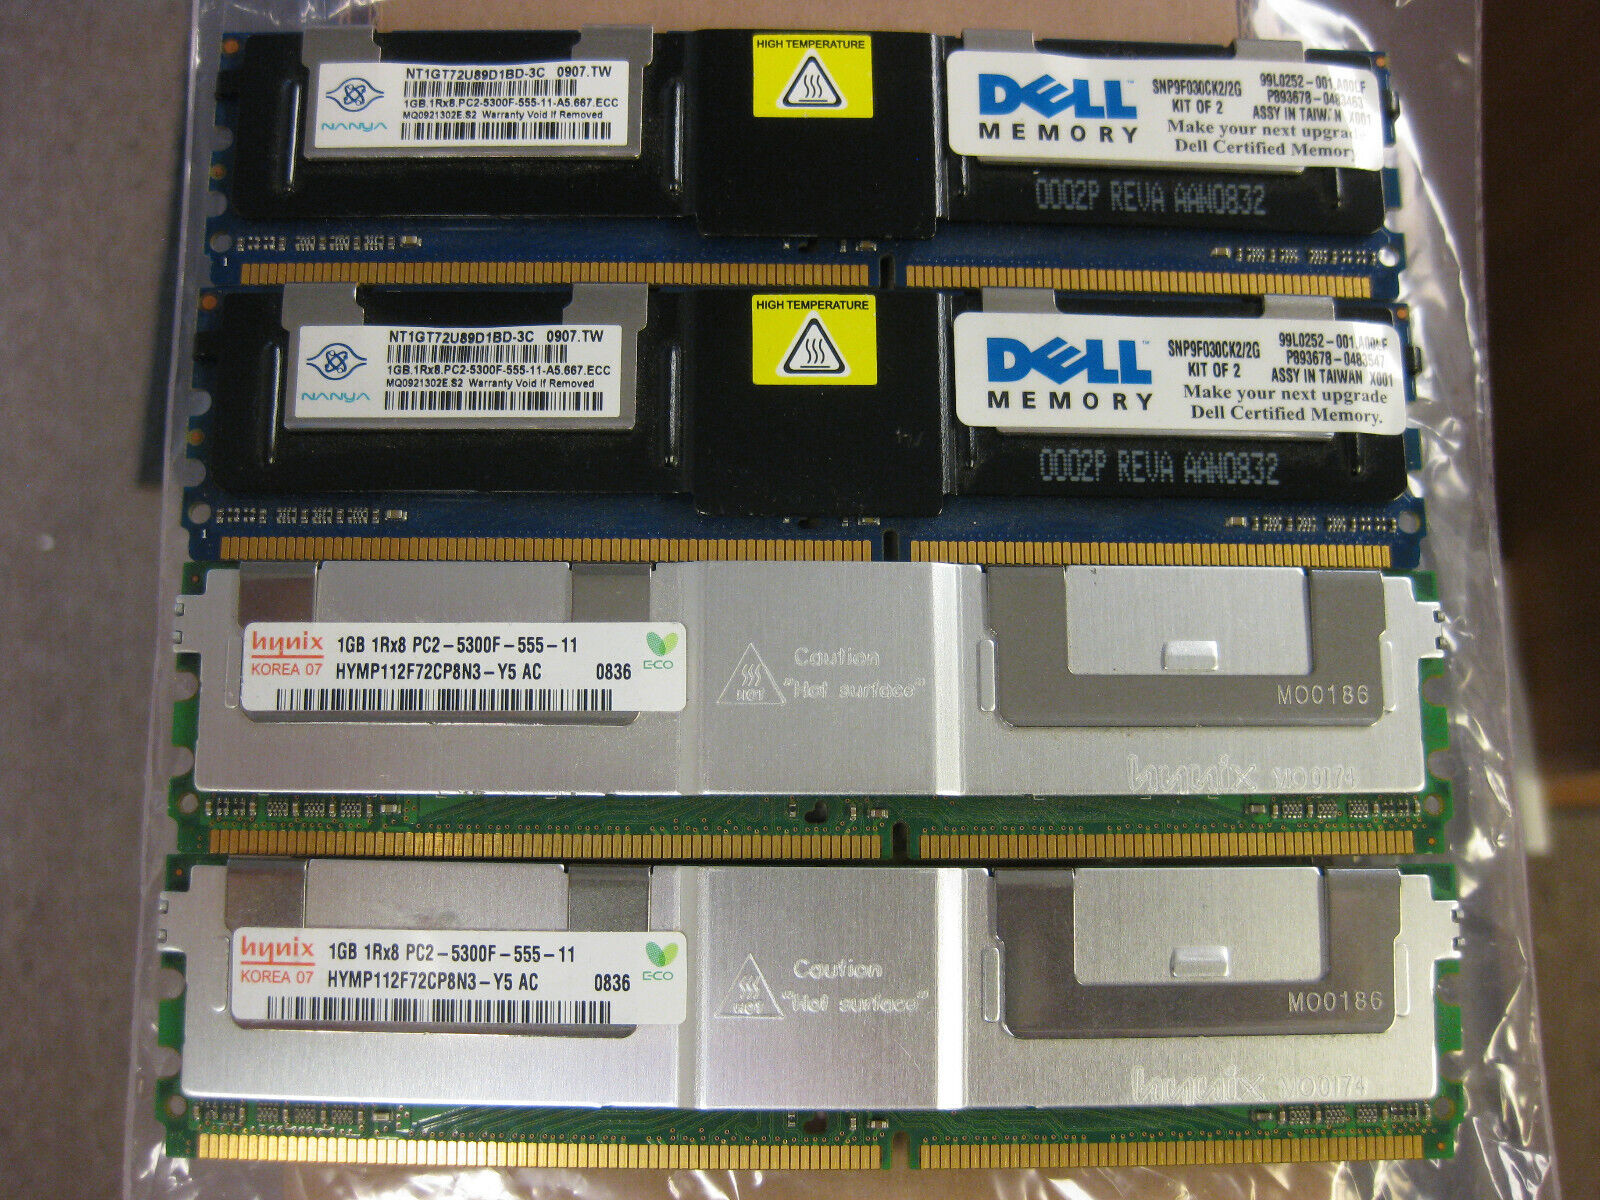 Hynix & Nanya 4GB (2 x1GB) & (2 X1GB) 2Rx8 PC2-5300F DDR2 667Mhz Server Memory